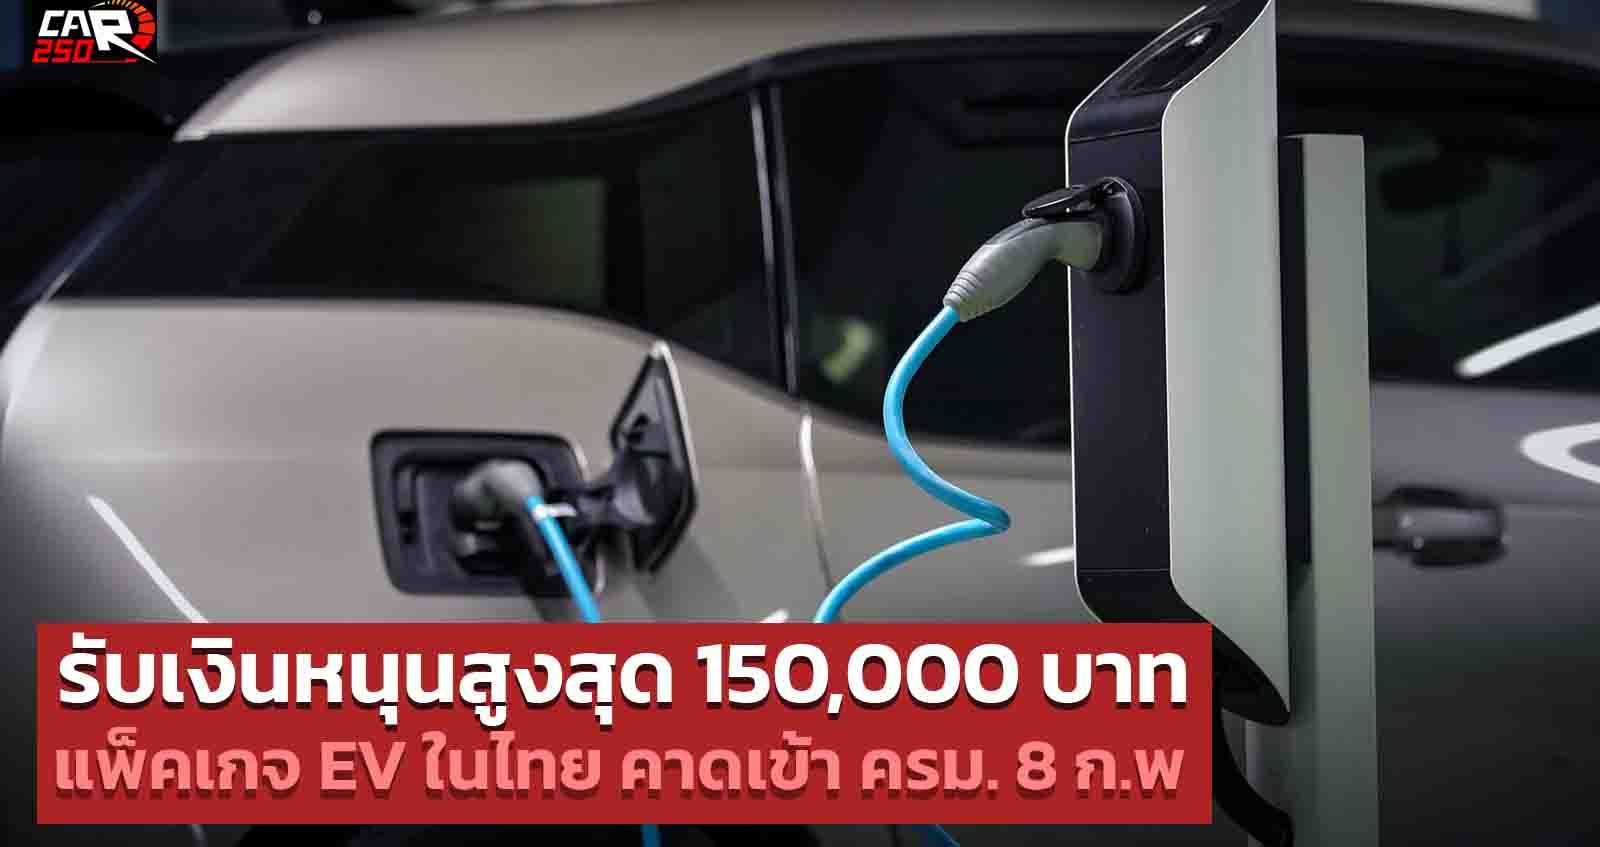 รับเงินหนุนสูงสุด 150,000 บาท แพ็คเกจ รถยนต์อีวี EV ในไทยคาดเข้าประชุม ครม. 8 ก.พ.65